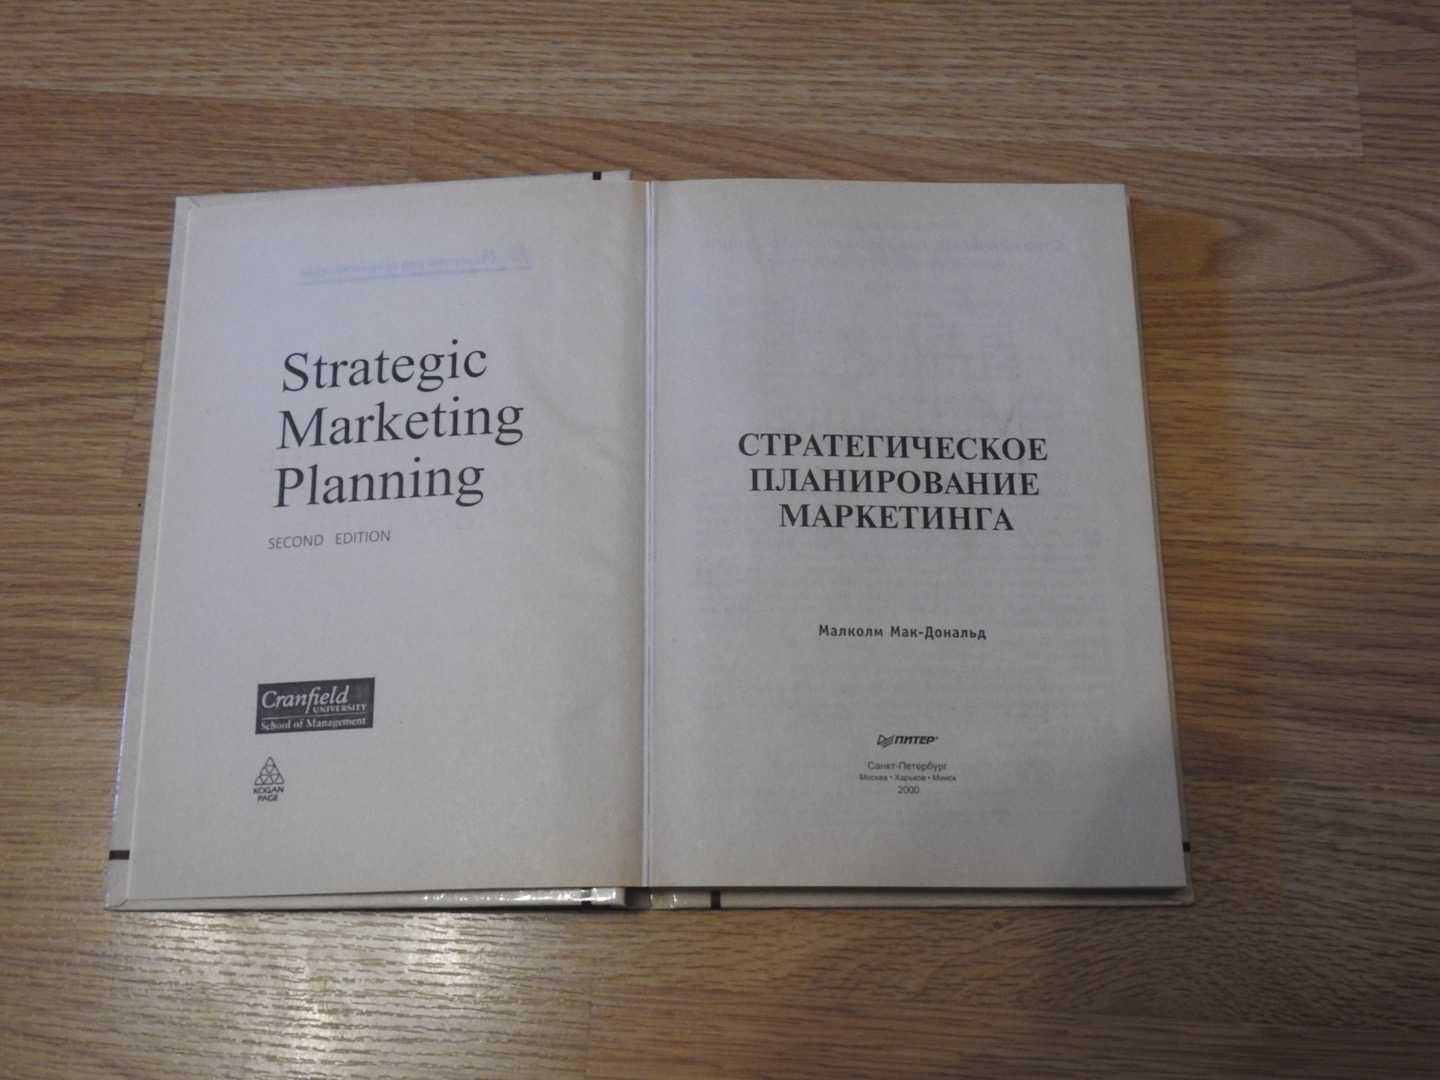 Стратегическое планирование маркетинга, МакДональд Малкольм